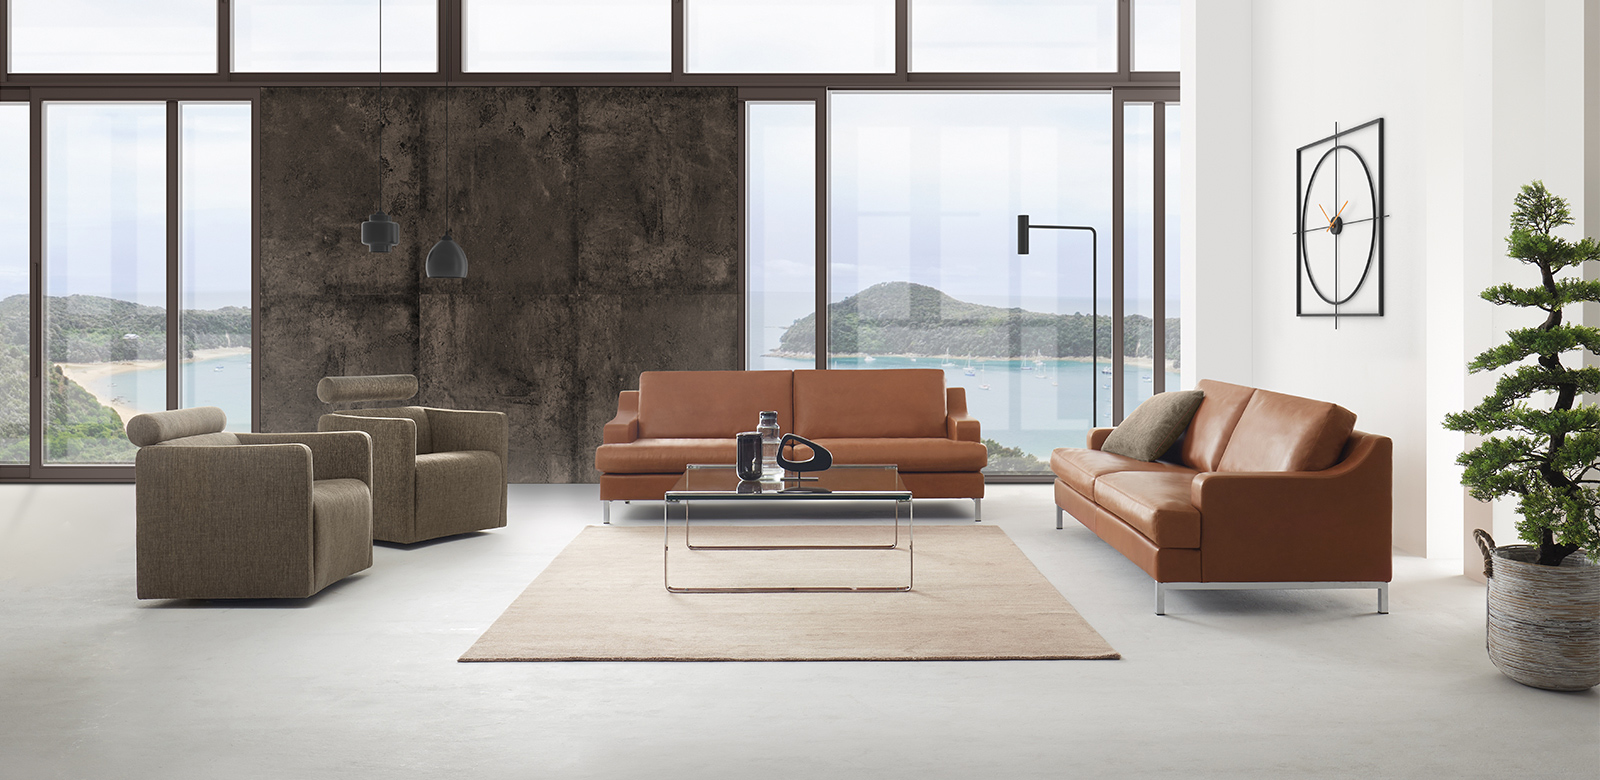 CL770 aus braunem Leder mit zwei Sesseln aus Stoff in modernem Loft-Wohnzimmer mit Seeblick